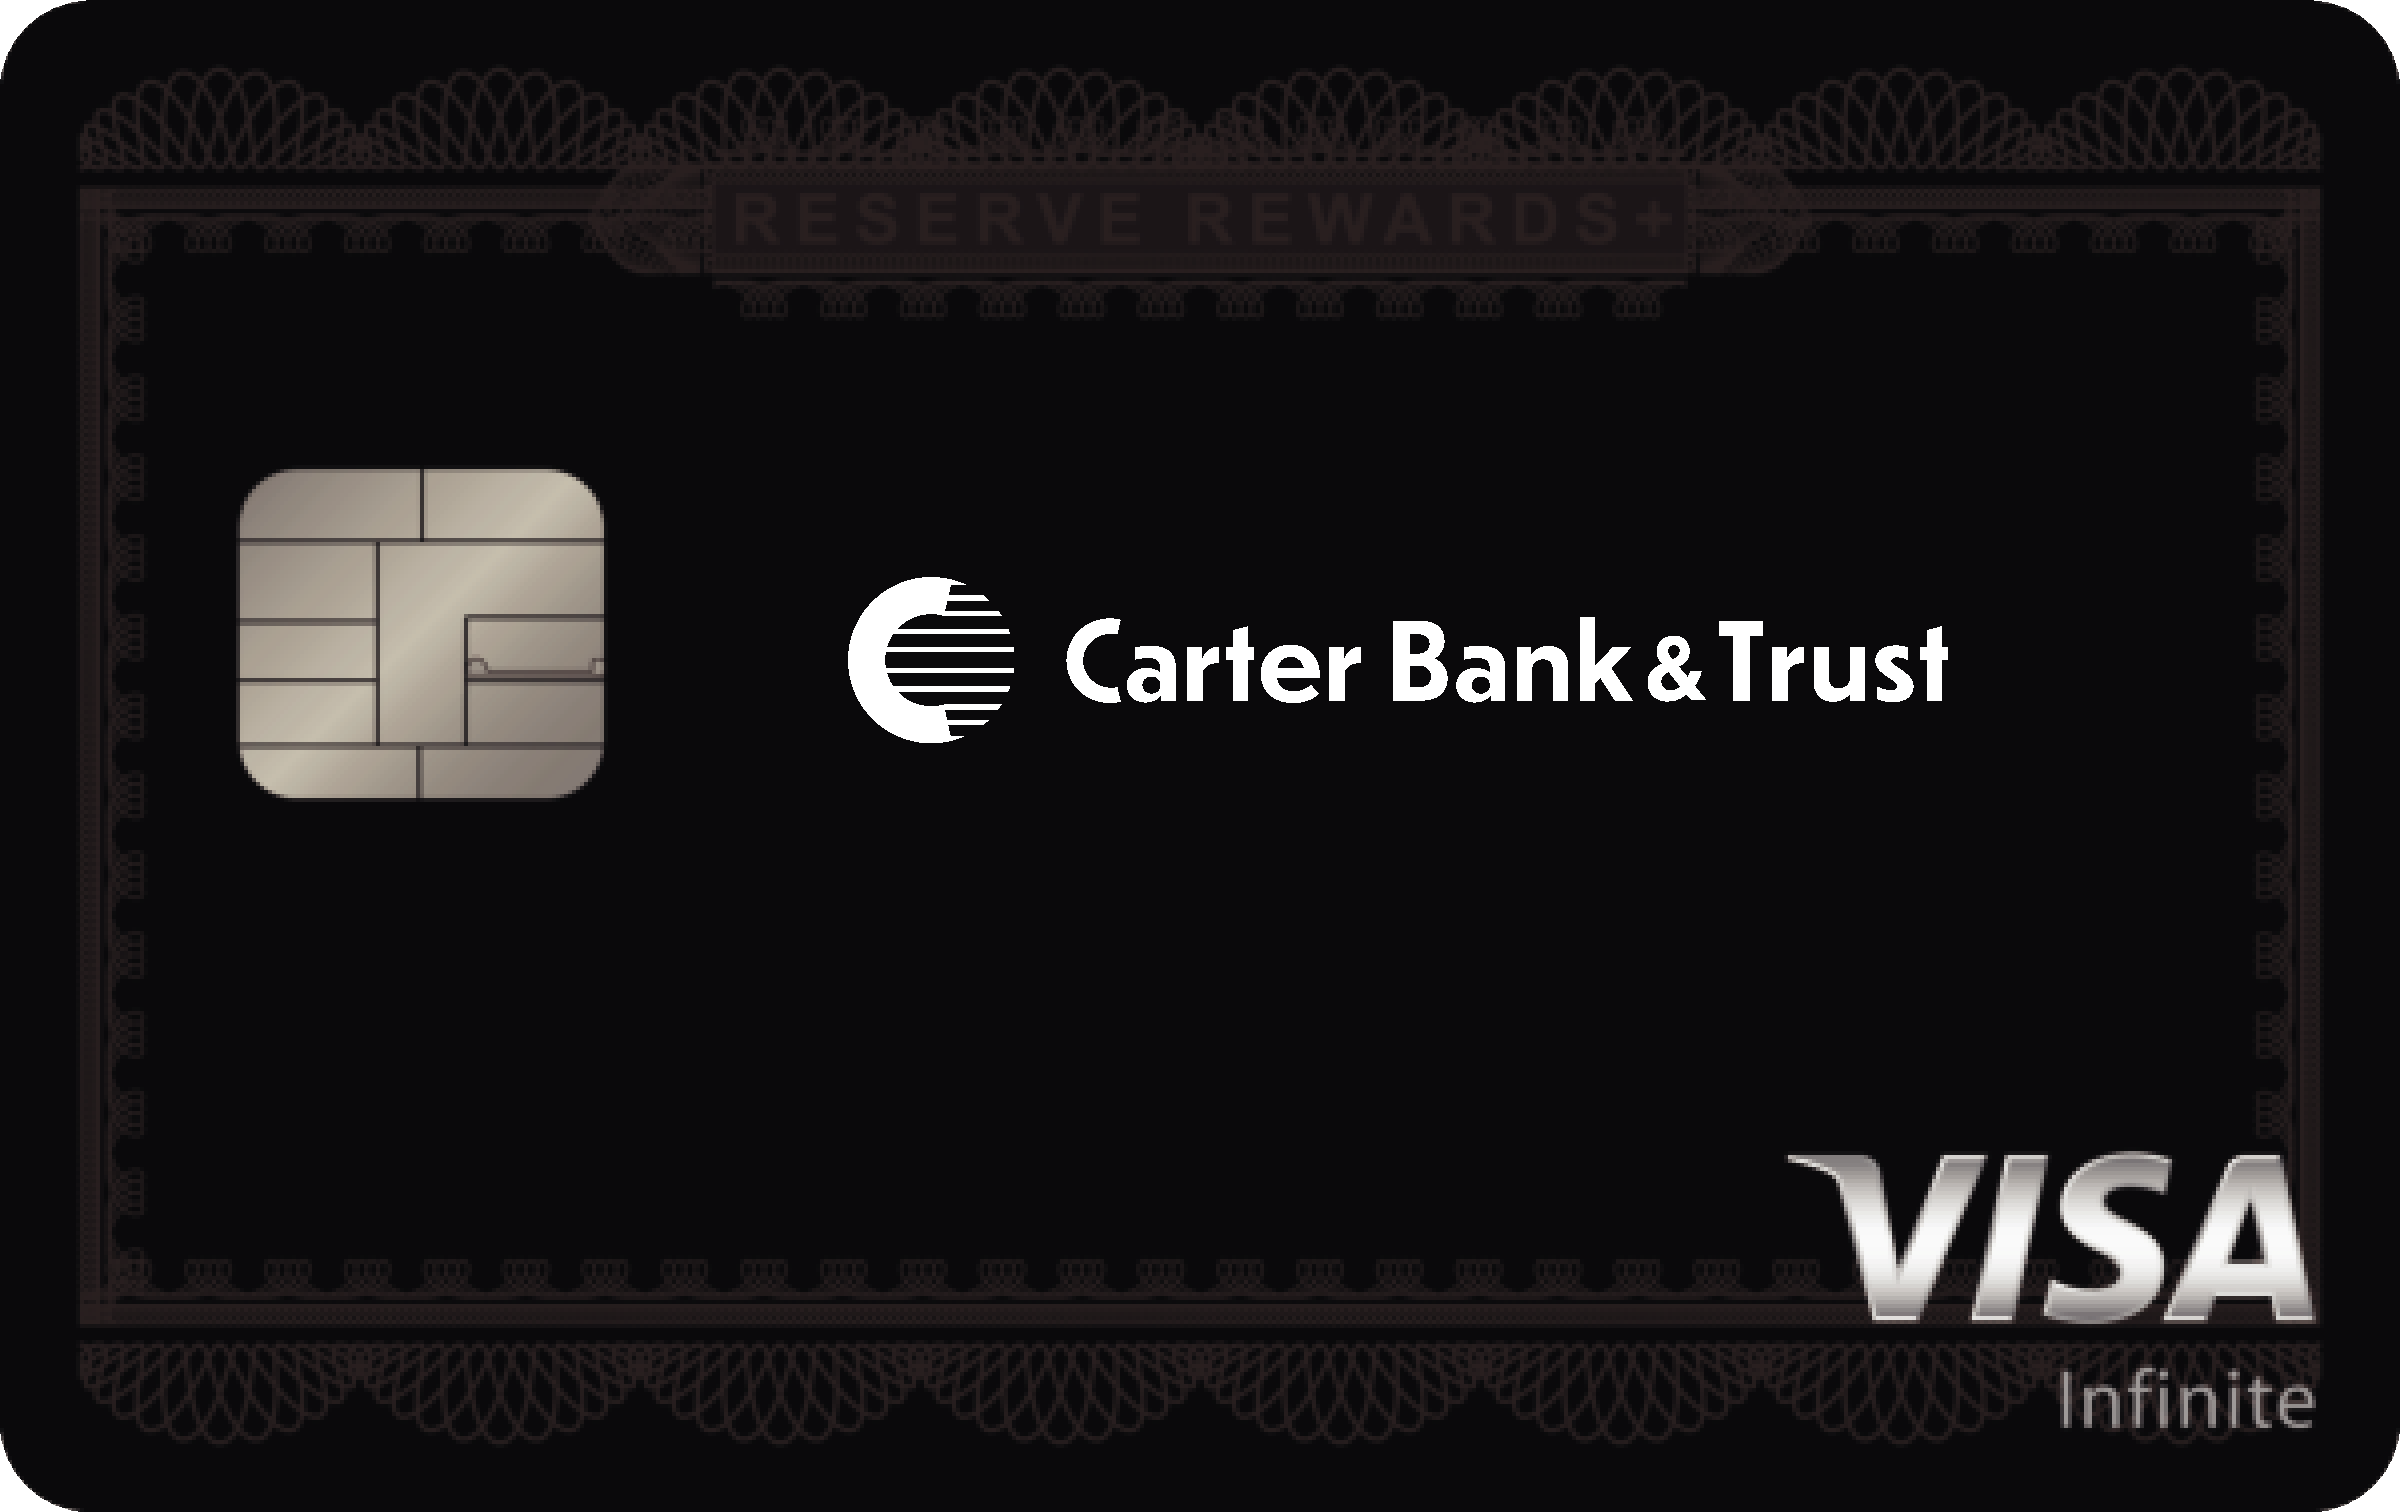 Carter Bank & Trust Reserve Rewards+